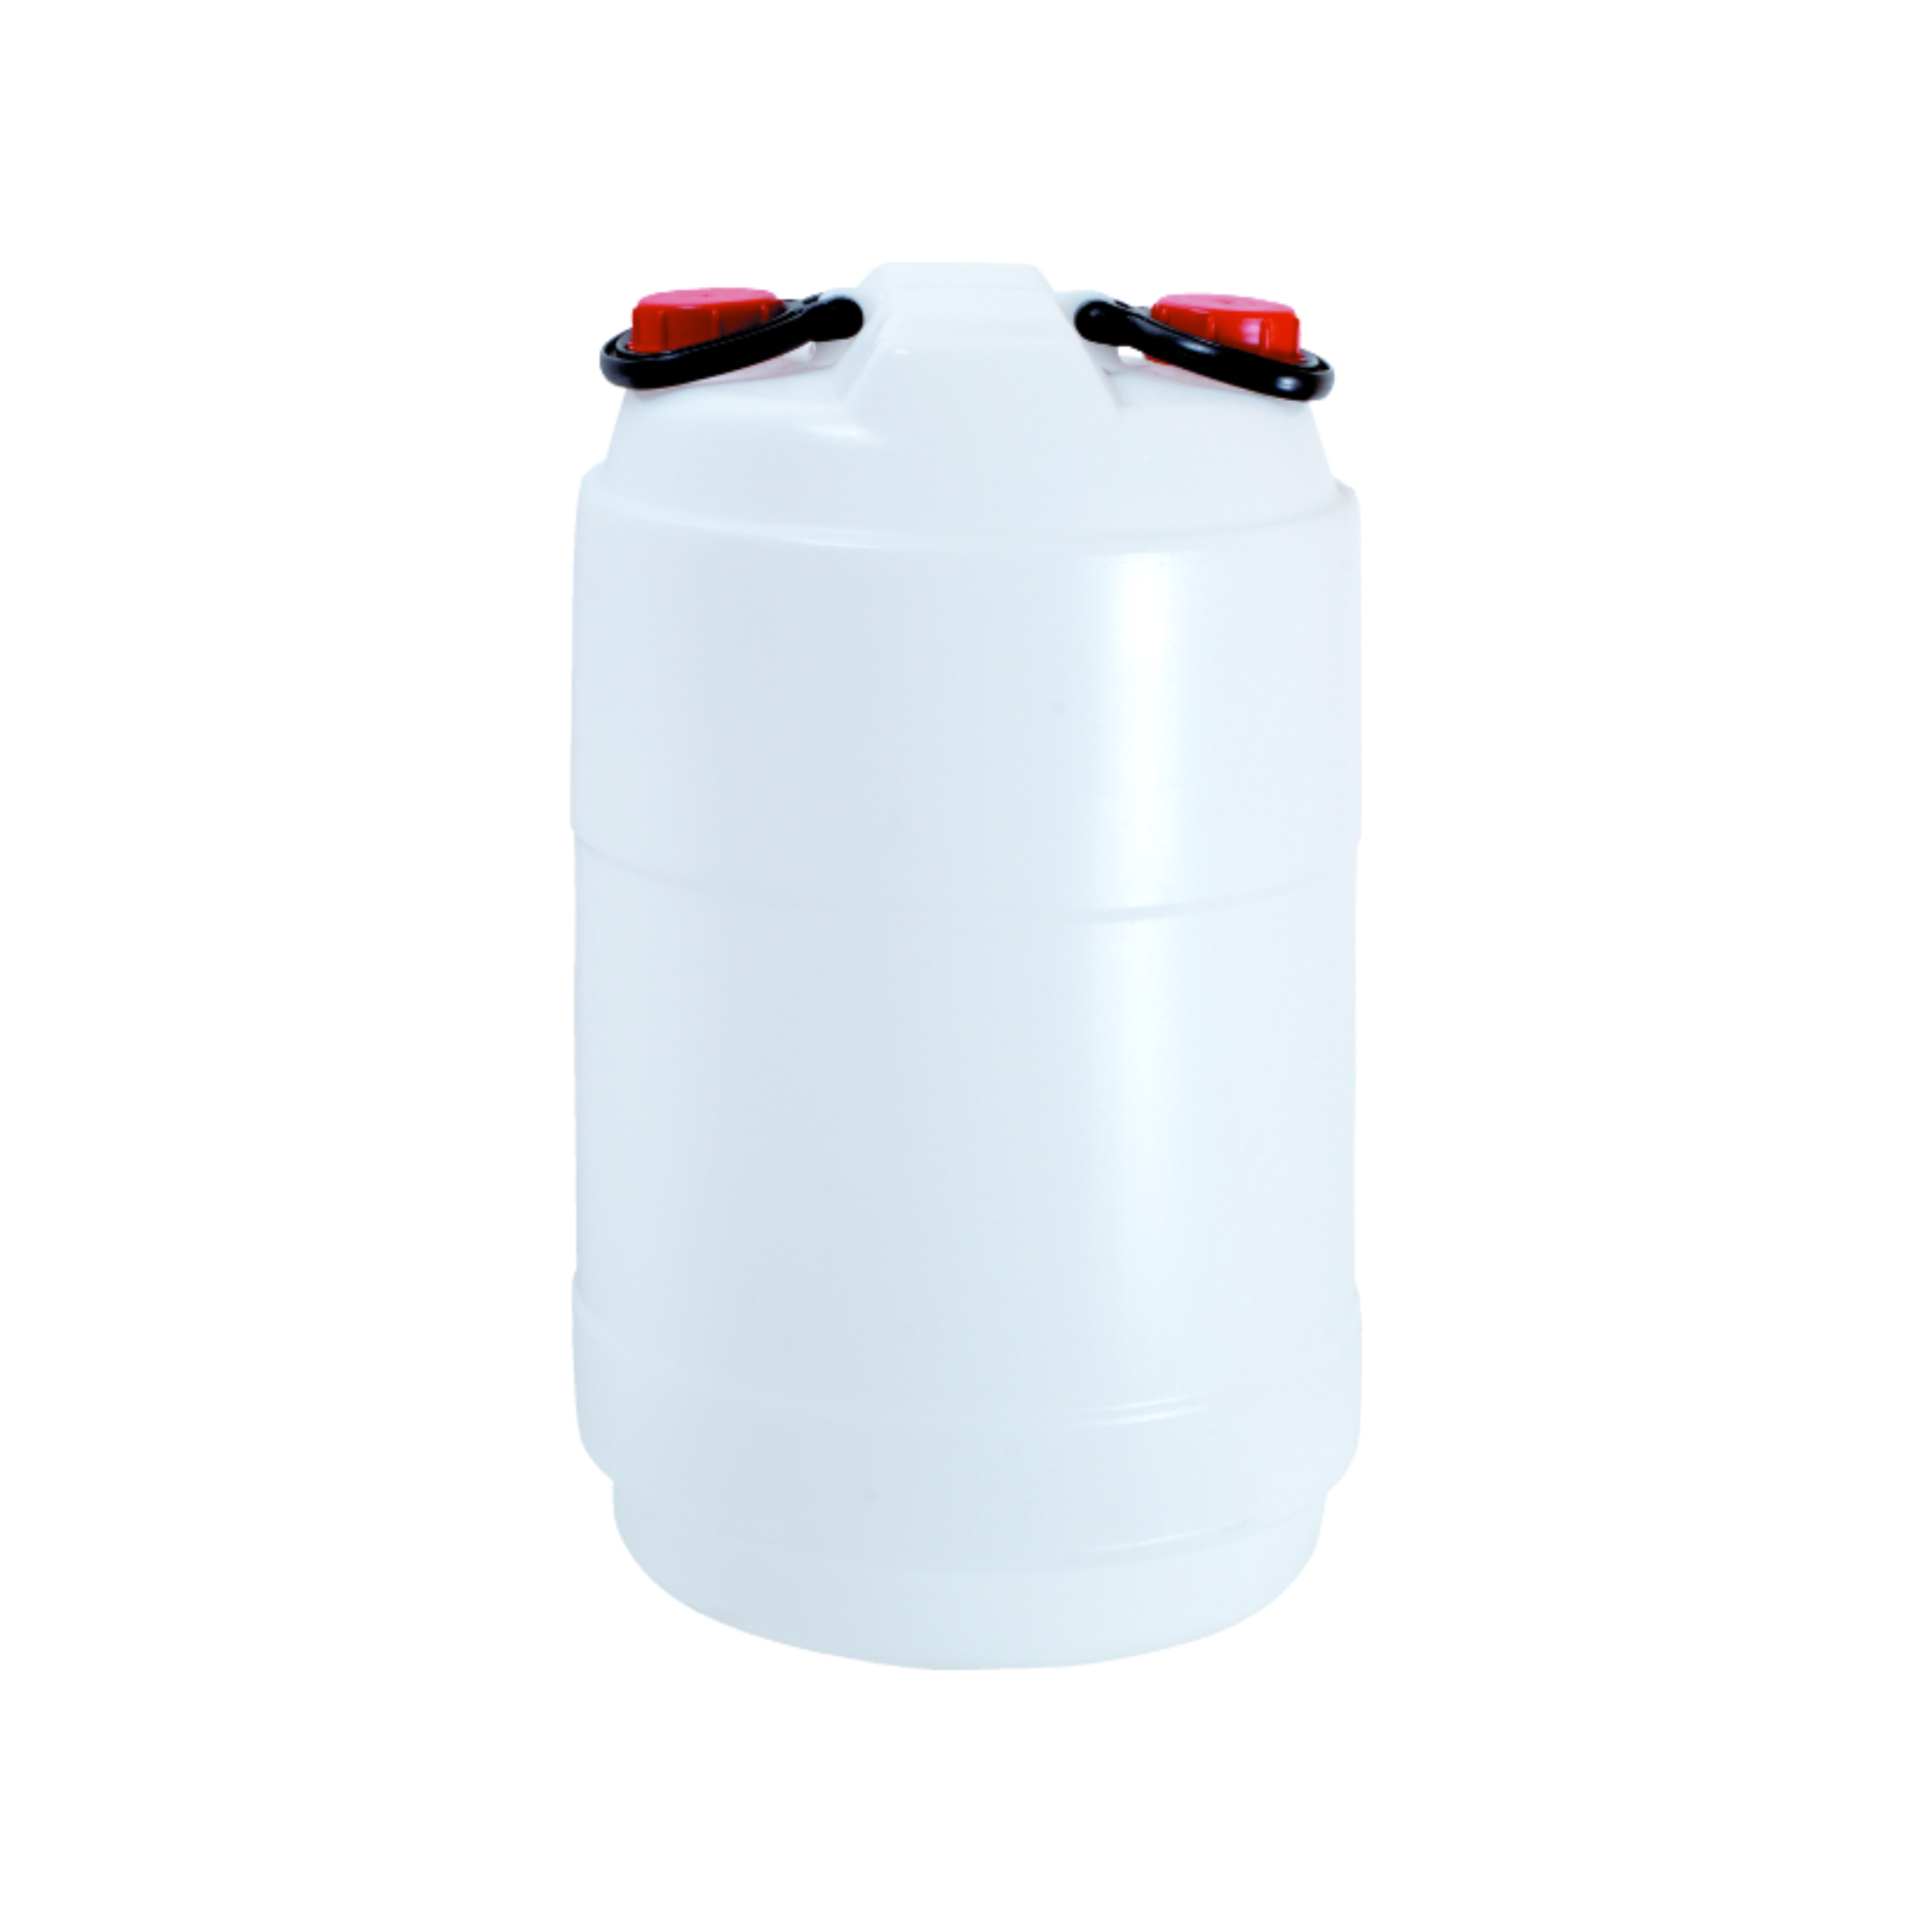 Mehrzweckfass aus Kunststoff mit Doppel-Schraubverschlüssen & Griffen 40 Liter | HxØ 51x36cm | Weiß